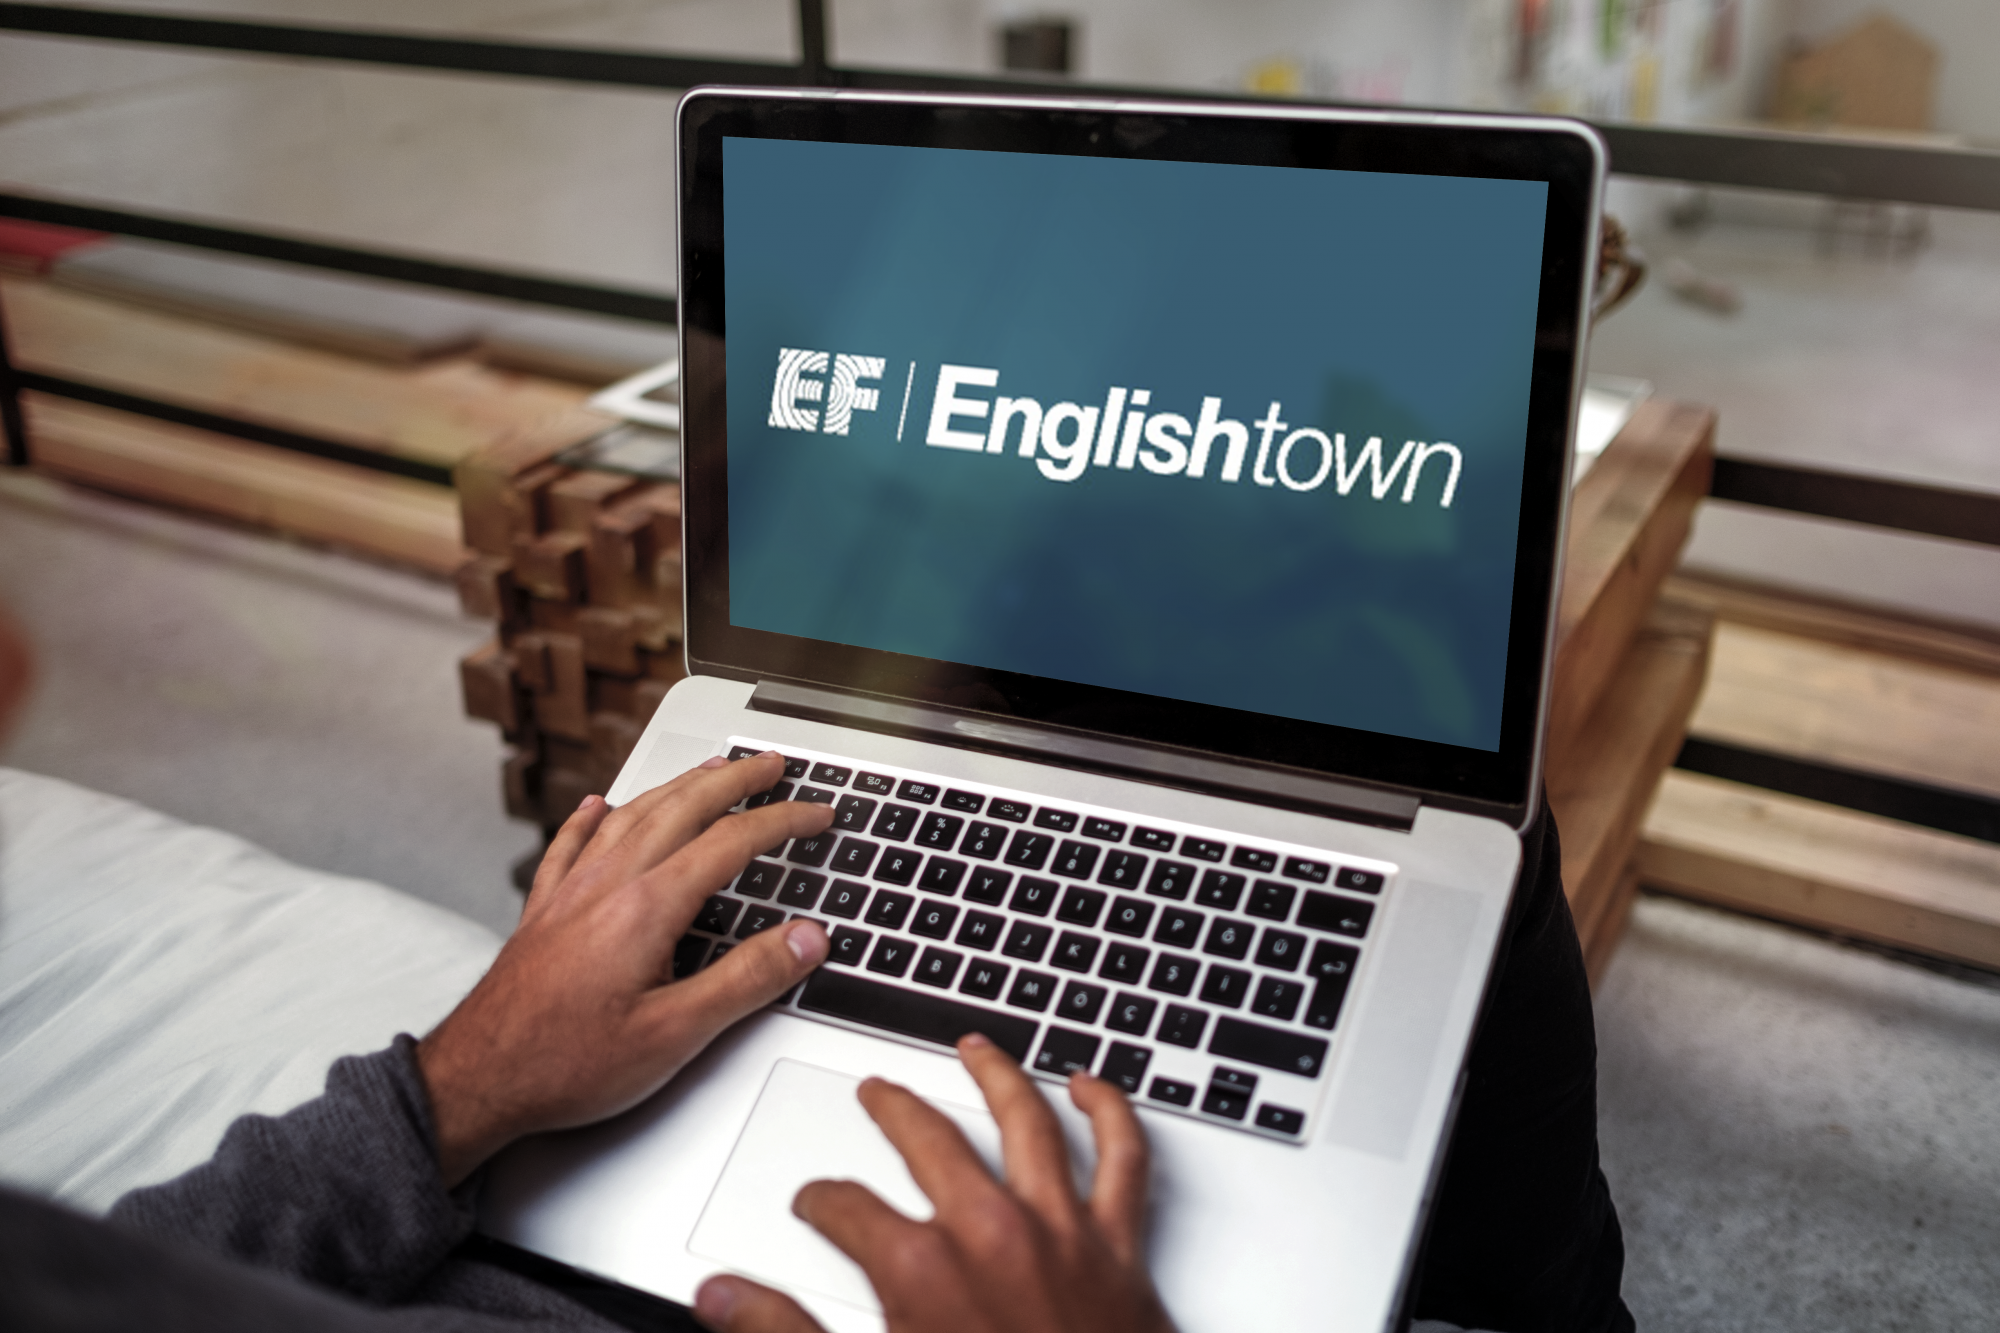 Phần mềm học tiếng Anh giao tiếp EF English town